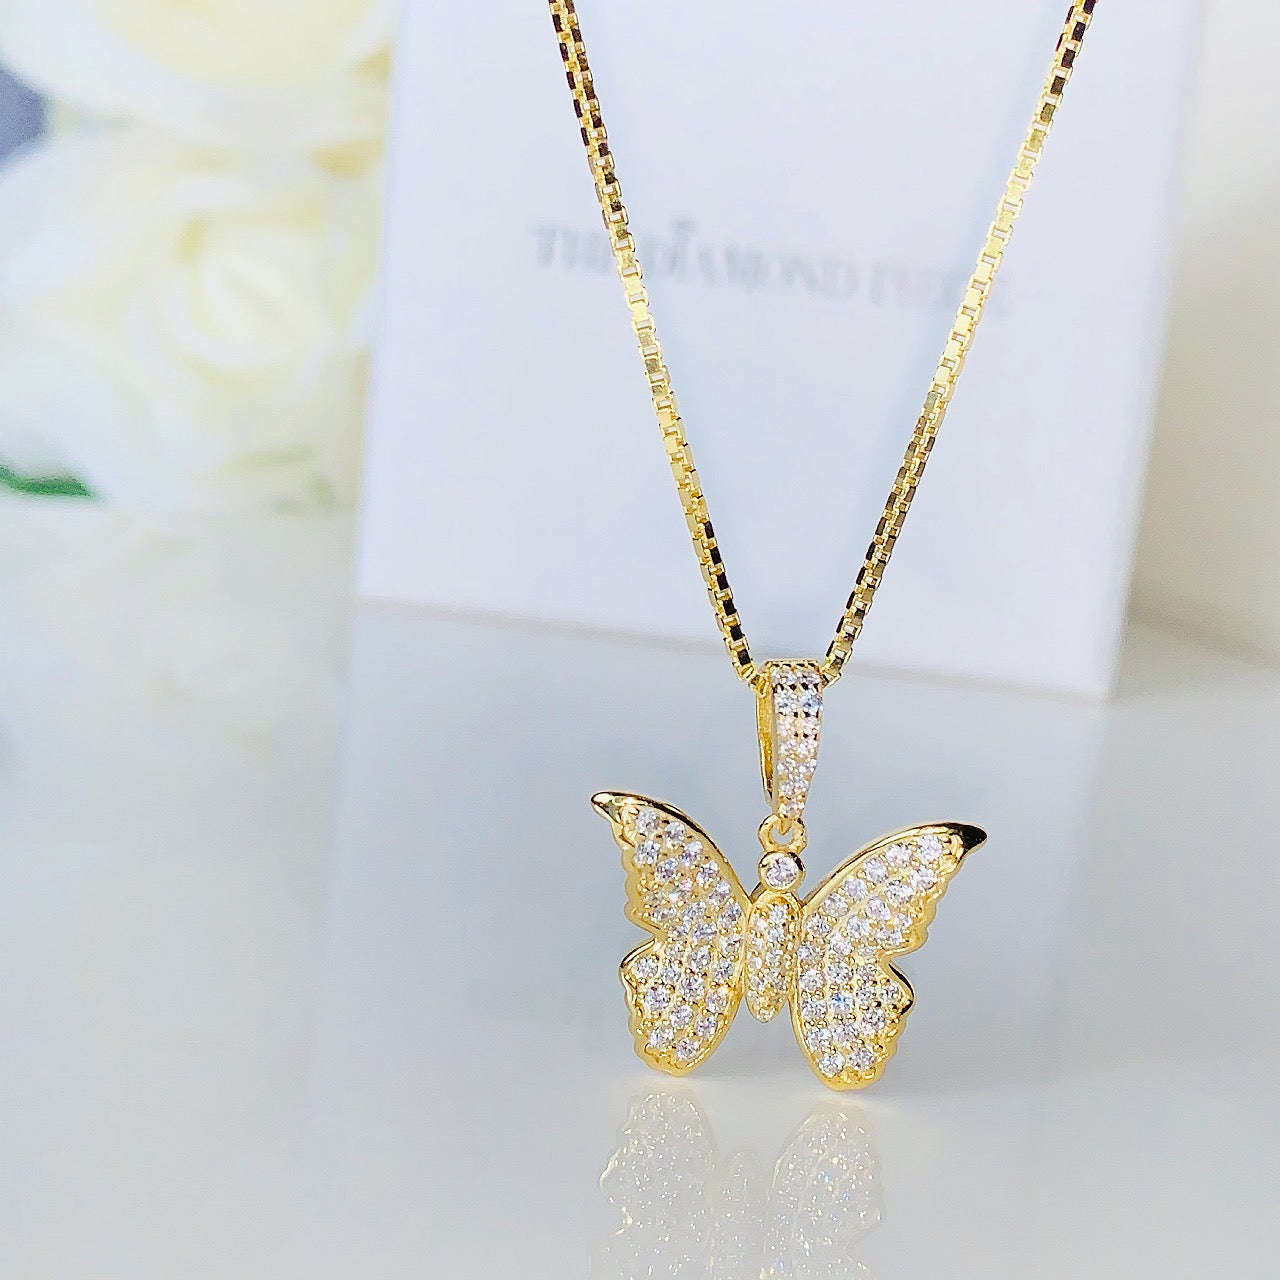 Pave' Diamond Butterfly Necklace